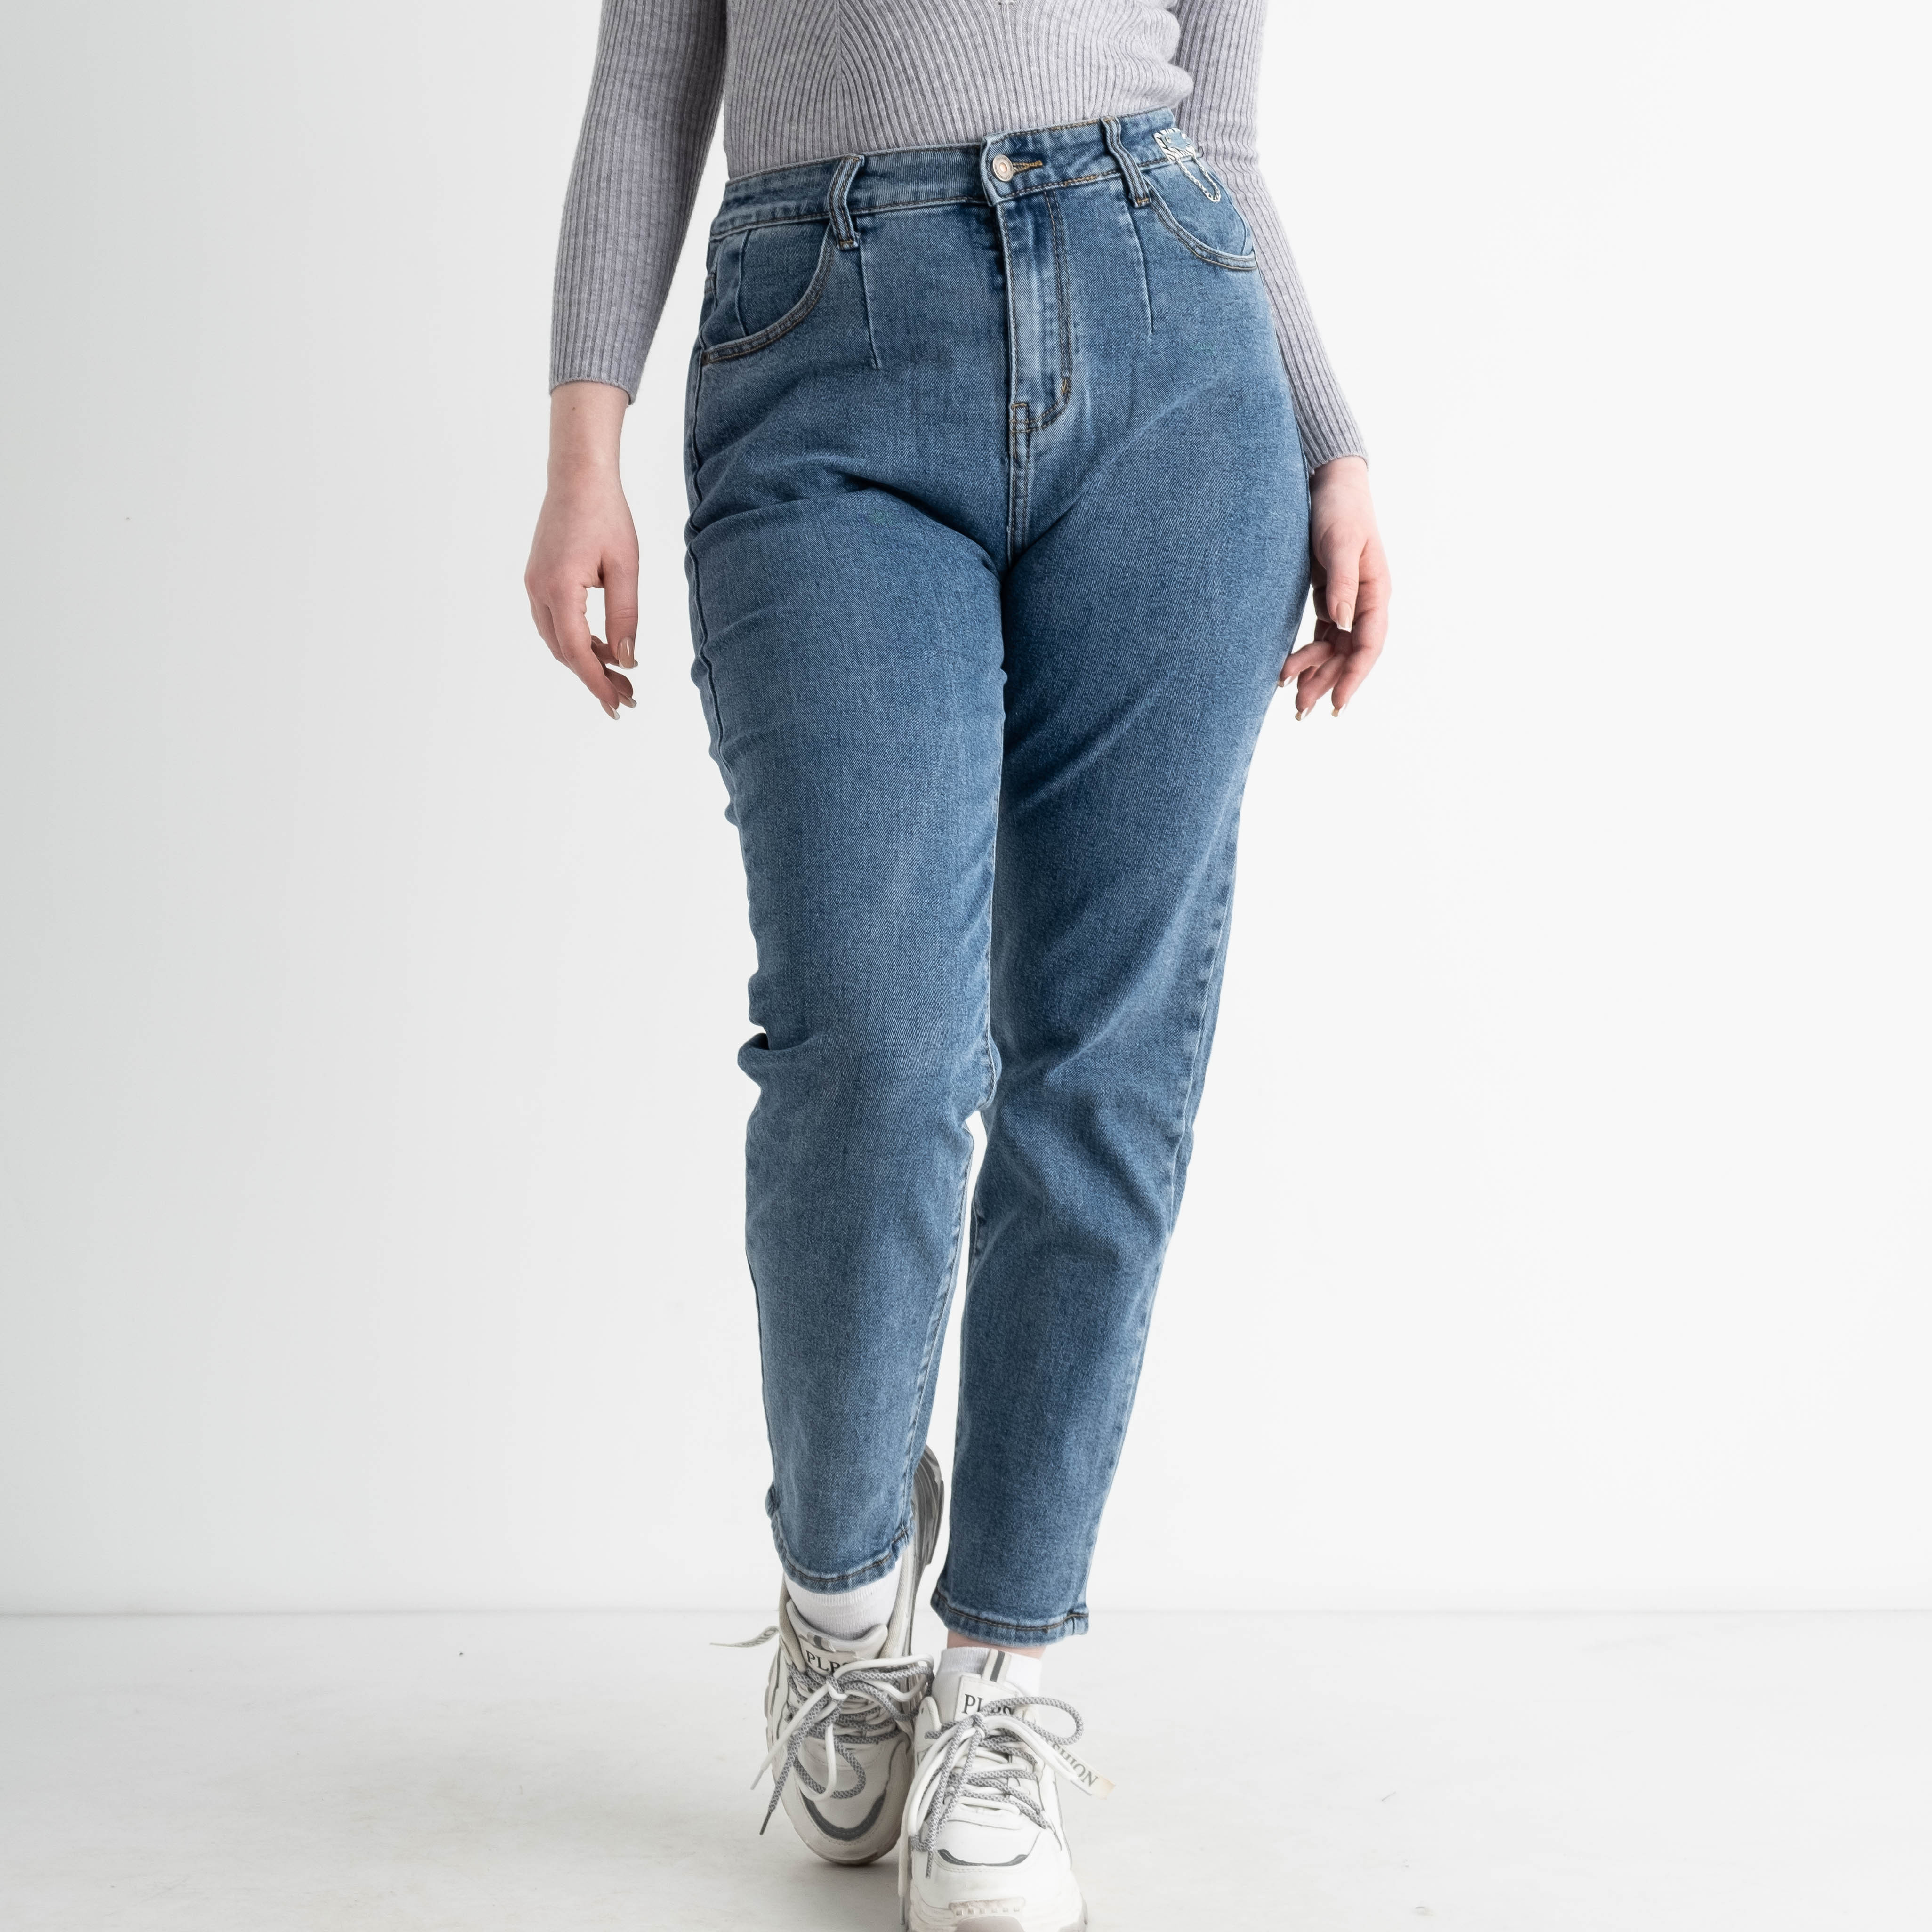 0026 New Jeans мом полубатальный женский голубой стрейчевый (6 ед. размеры: 28.29.30.31.32.33)